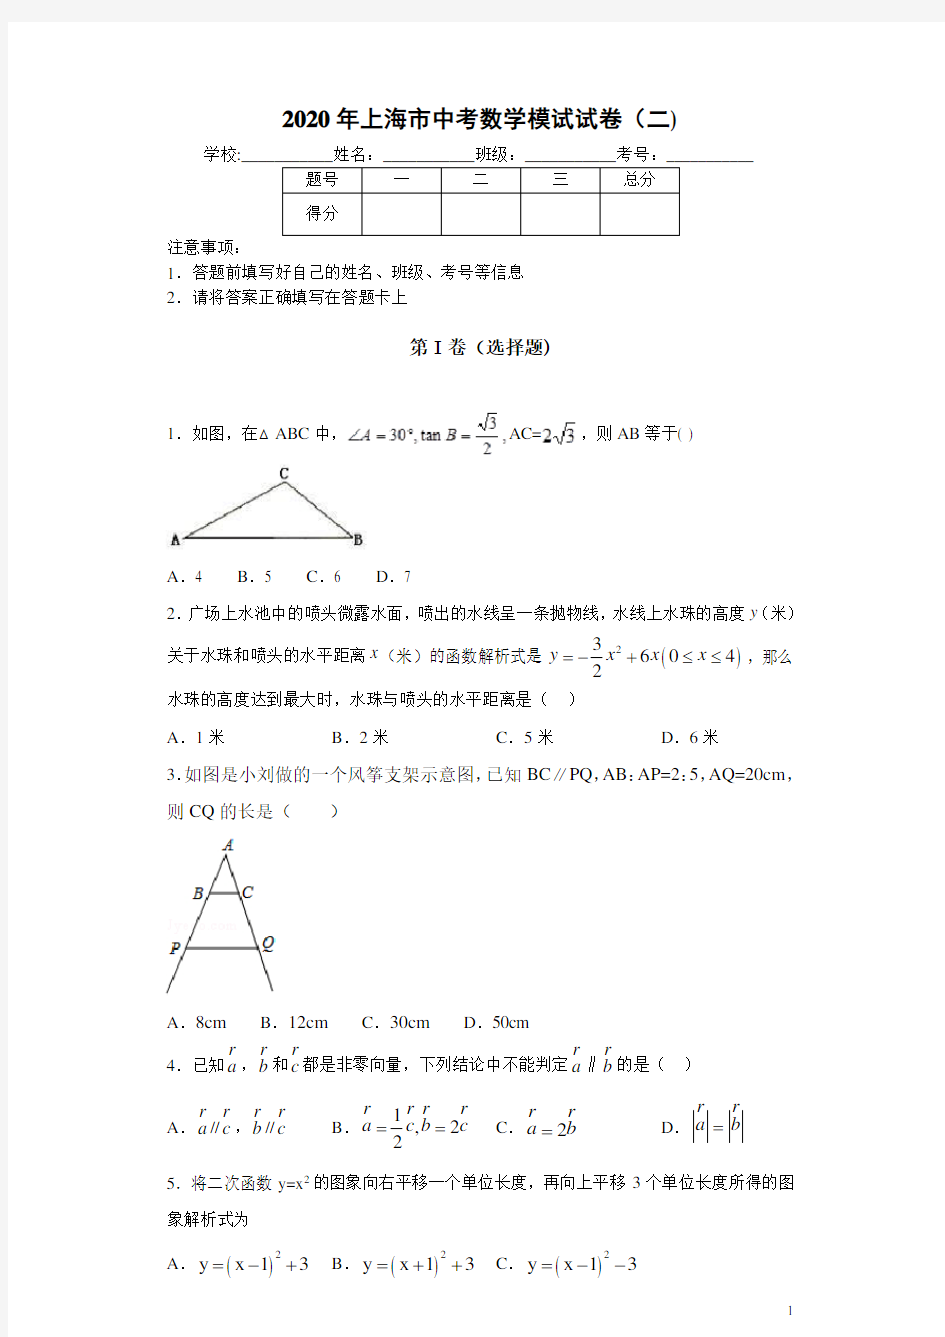 上海市2020年中考数学模拟试题(二)及答案解析